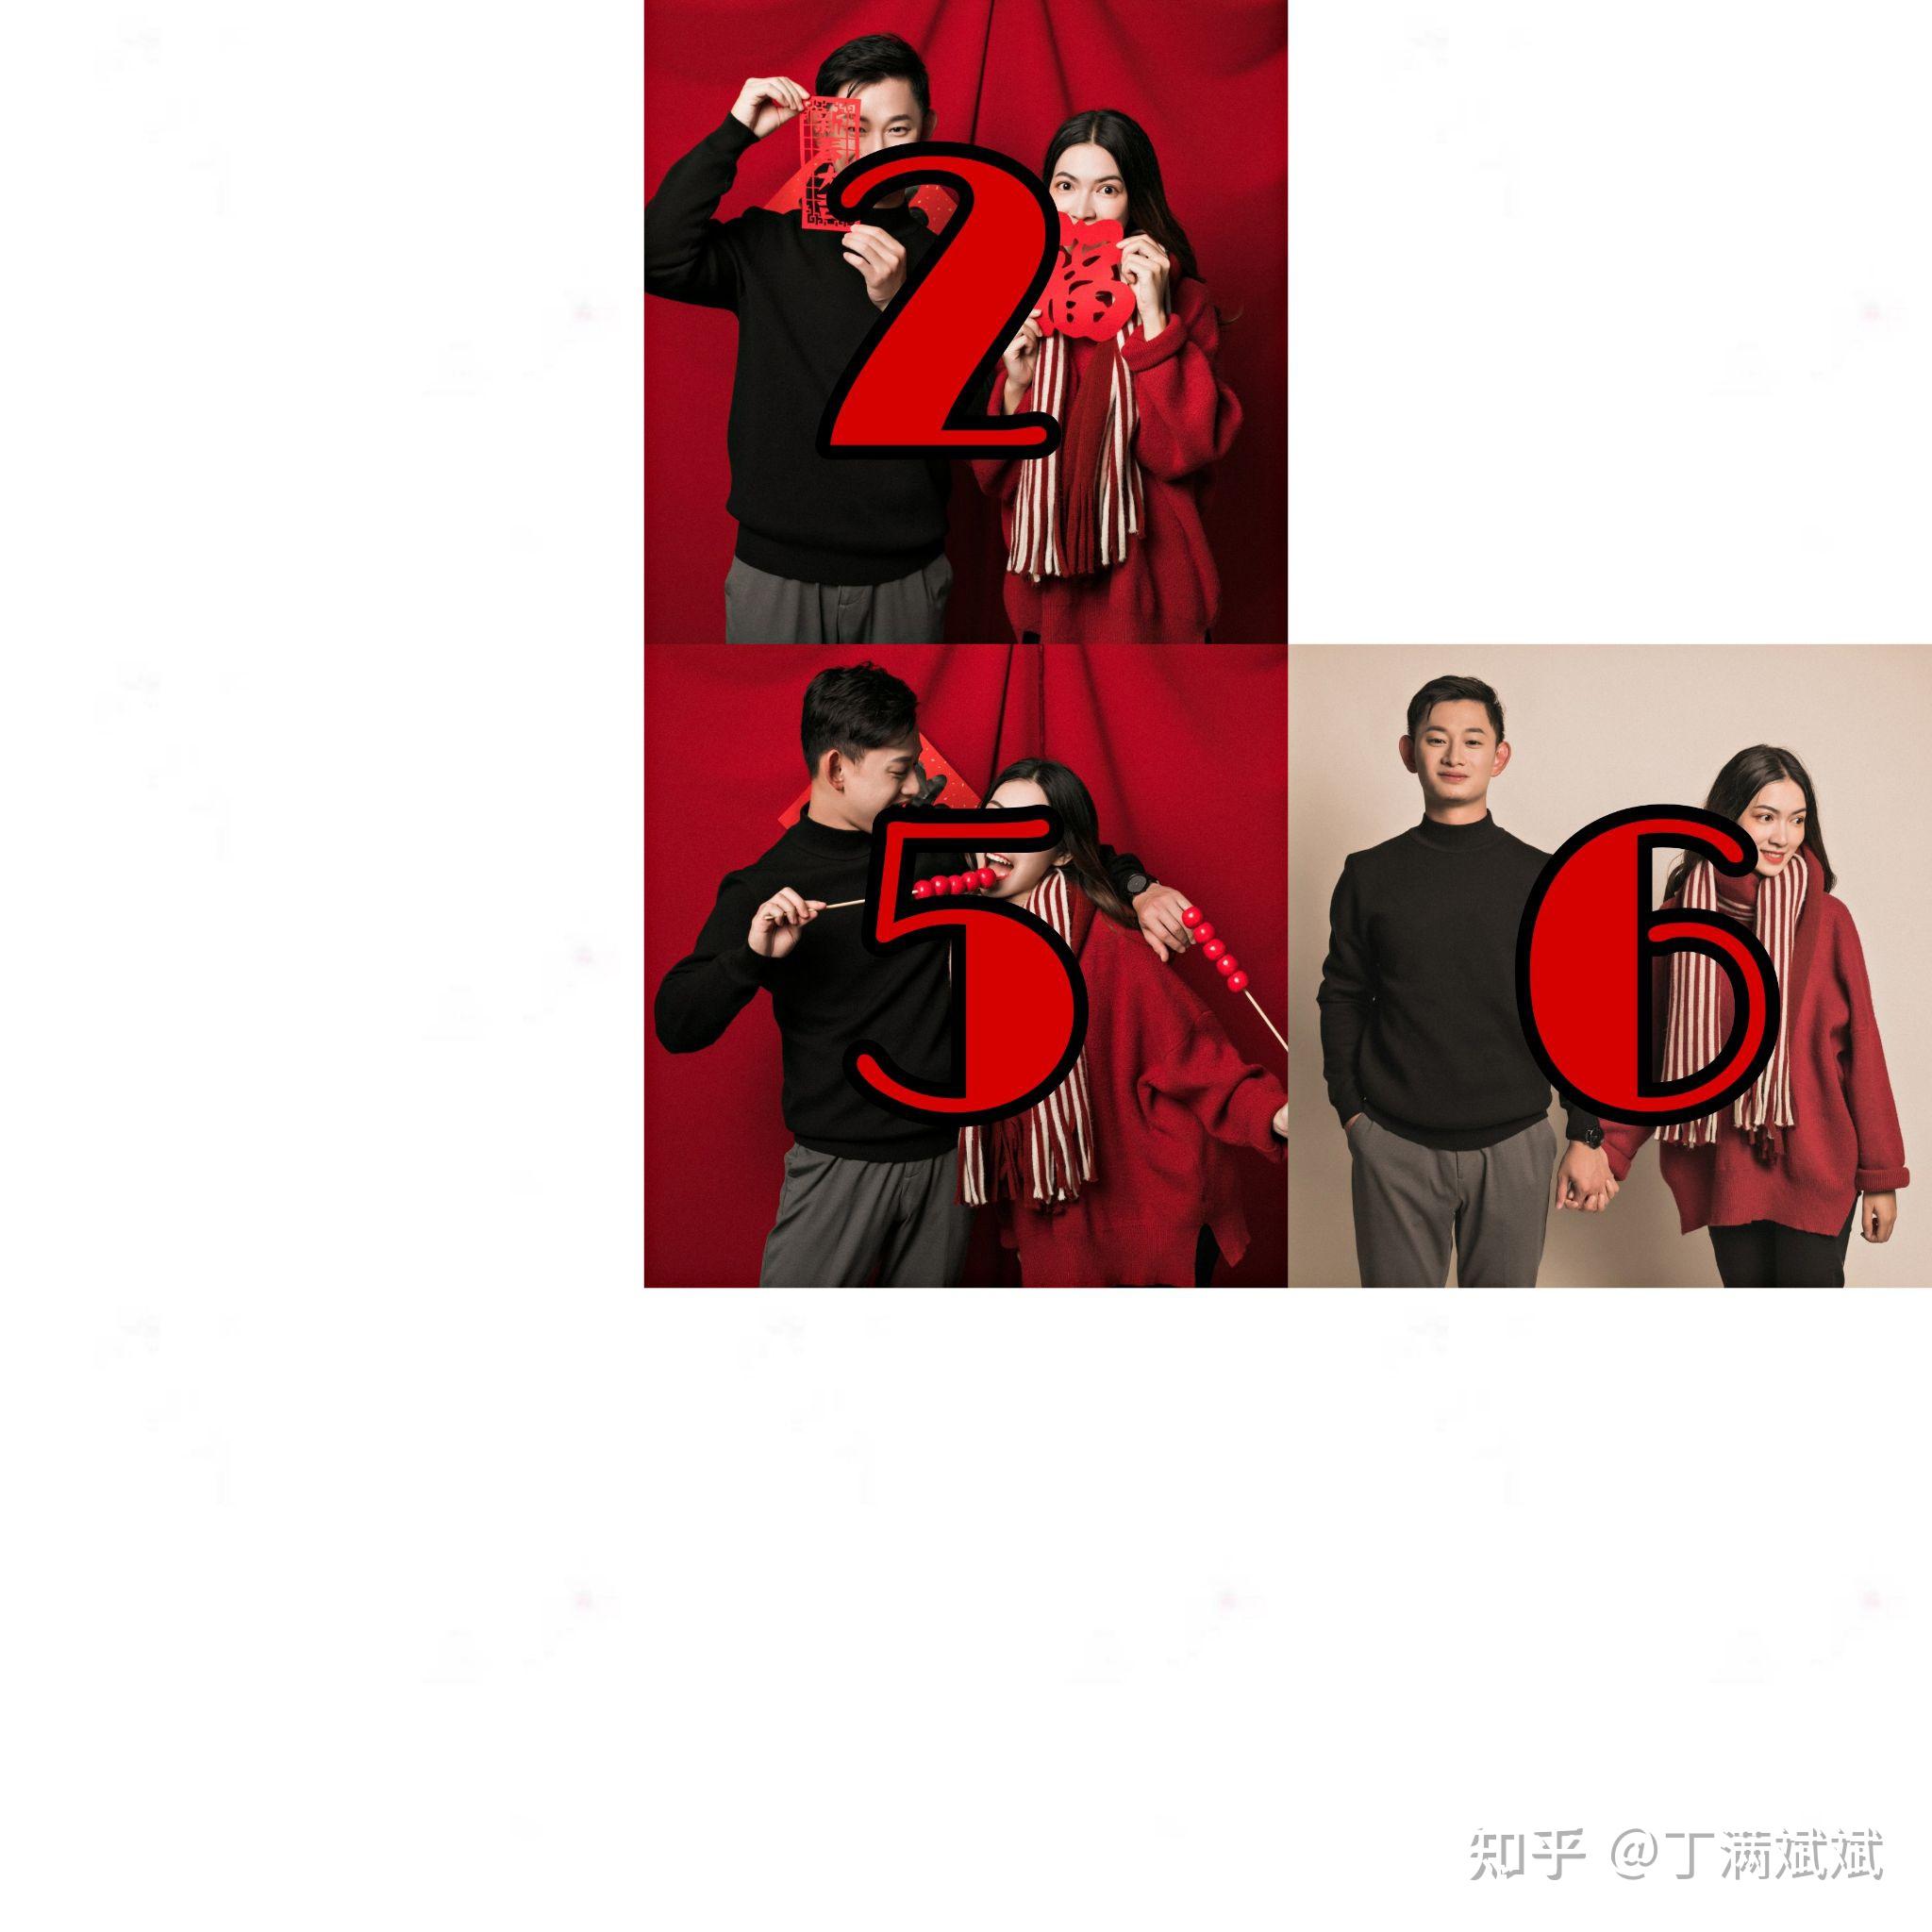 六一数字太阳蓝天白云儿童节中国传统文化宣传卡通手绘海报素材模板下载 -图巨人